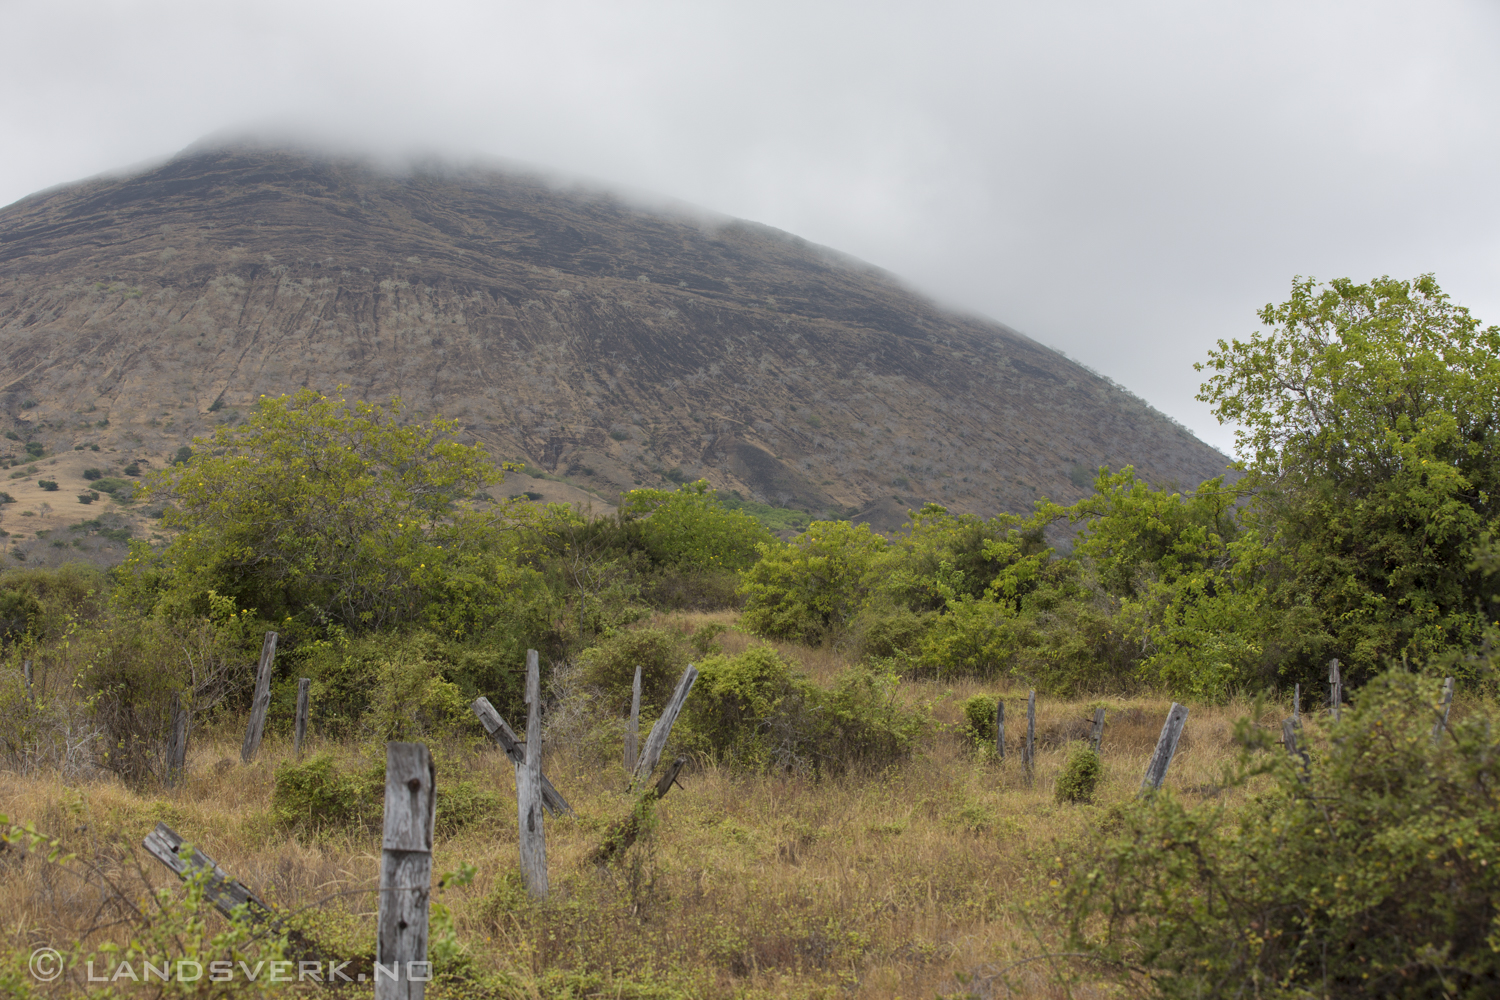 Puerto Egas, Isla Santiago, Galapagos. 

(Canon EOS 5D Mark III / Canon EF 70-200mm f/2.8 L IS II USM)